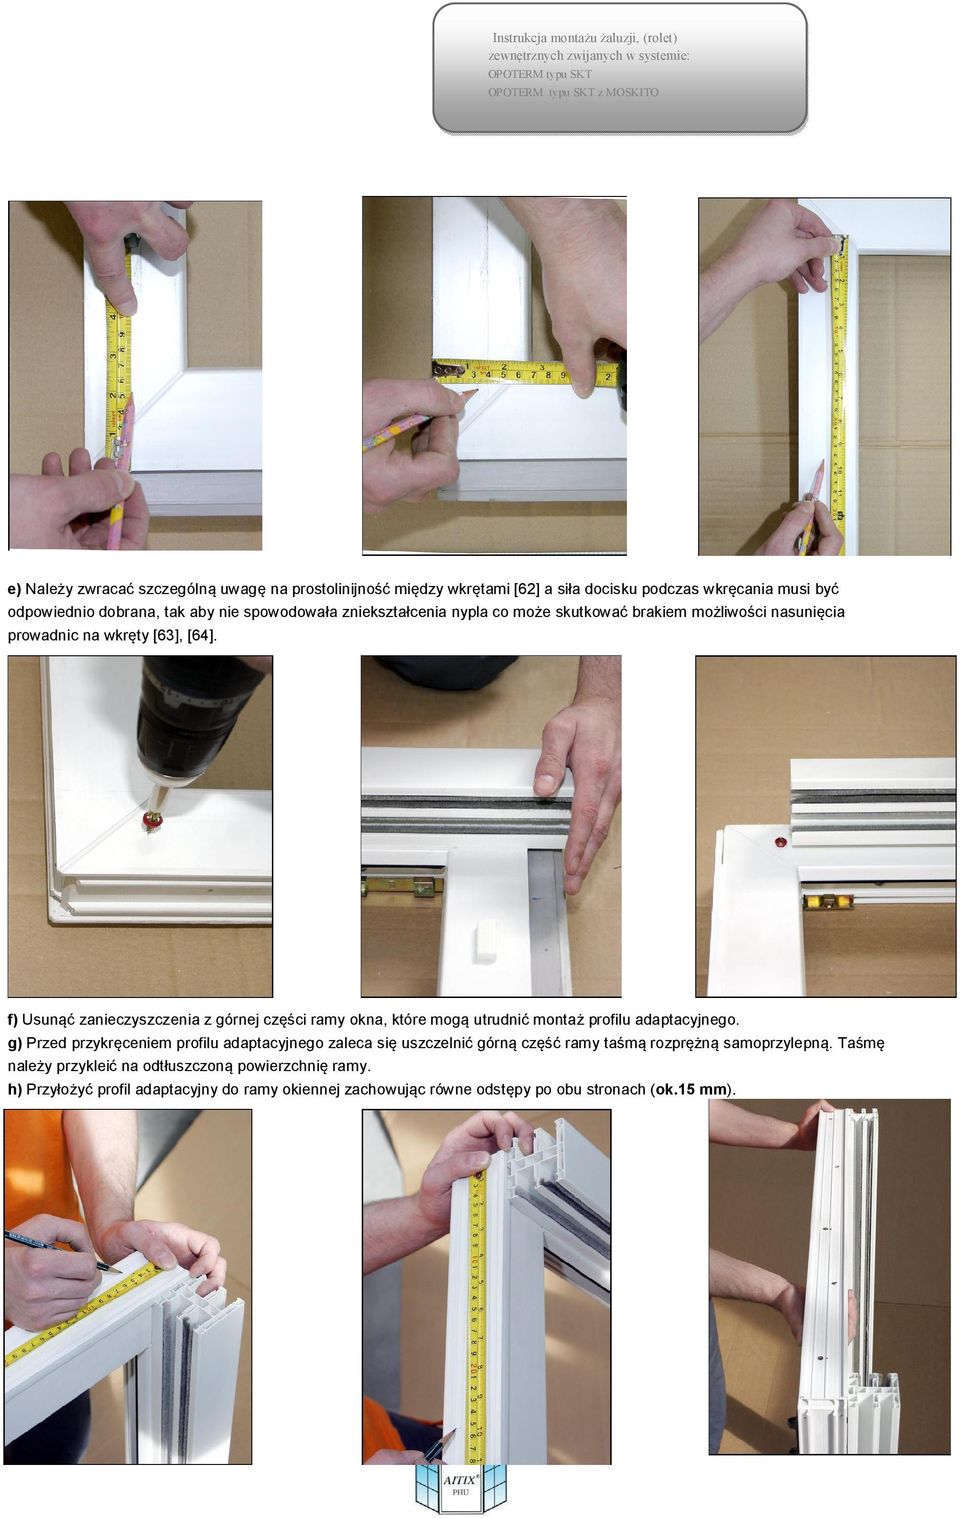 f) Usunąć zanieczyszczenia z górnej części ramy okna, które mogą utrudnić montaż profilu adaptacyjnego.